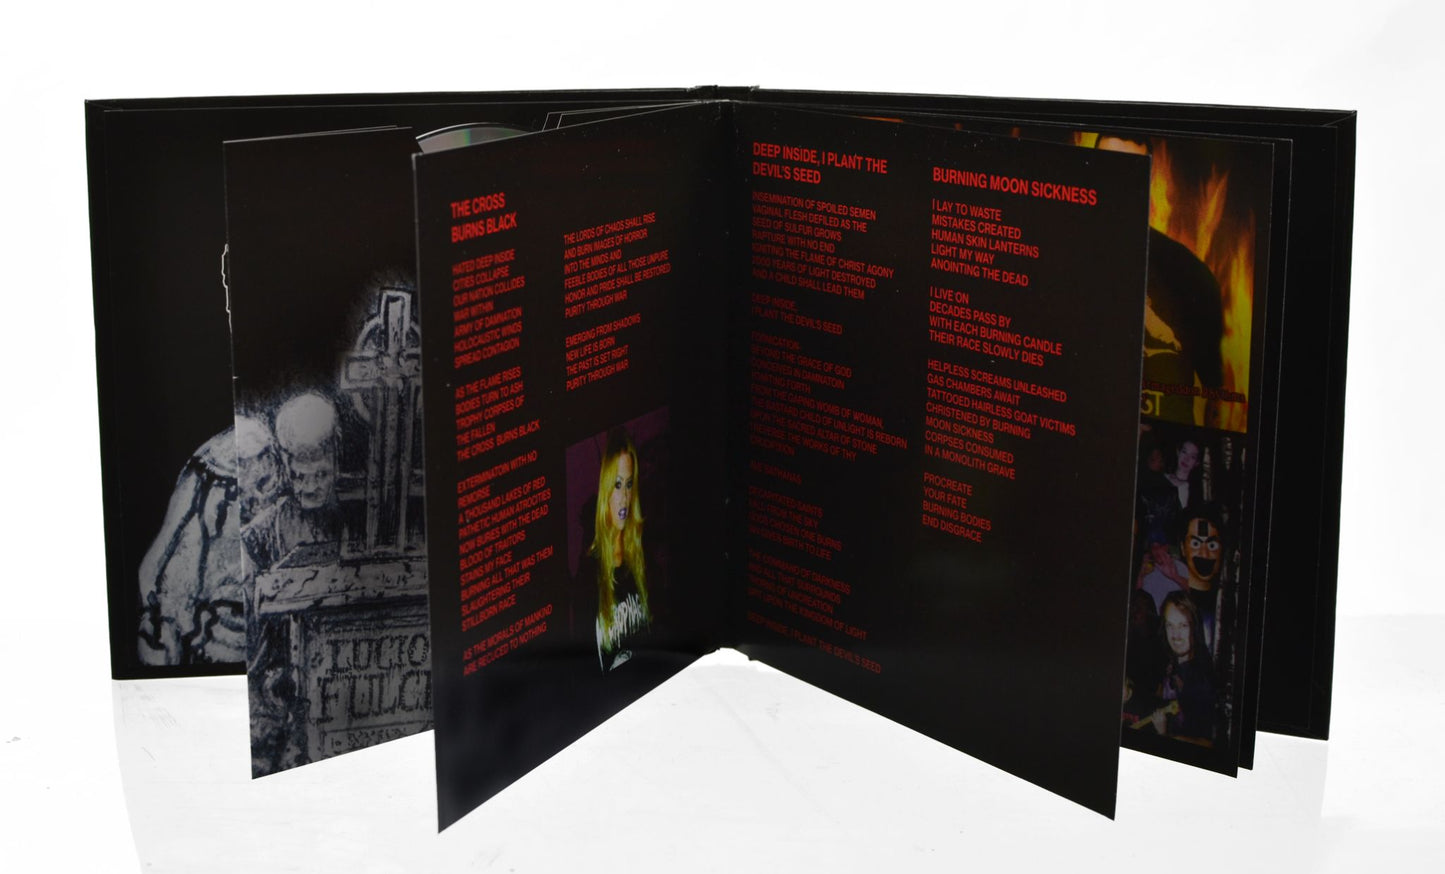 Necrophagia- Holocausto De La Morte (DIGIBOOK CD) - Death Metal aus USA